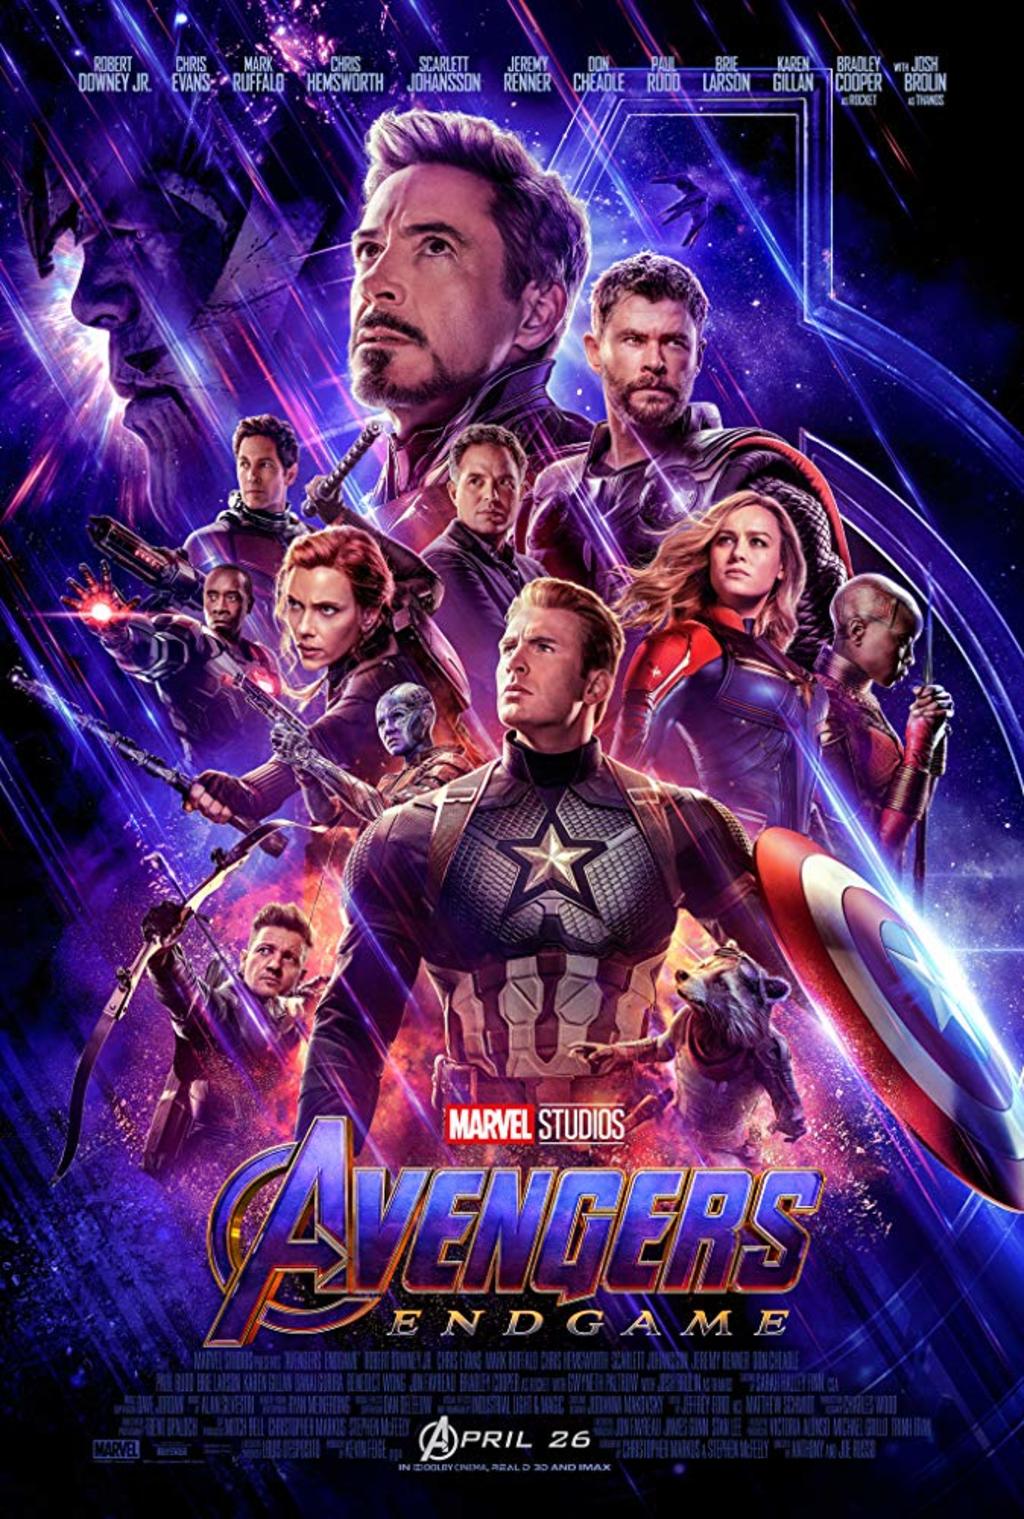 En cines. El próximo fin de semana, Avengers: Endgame regresará a los cines con escenas inéditas. (IMBD)